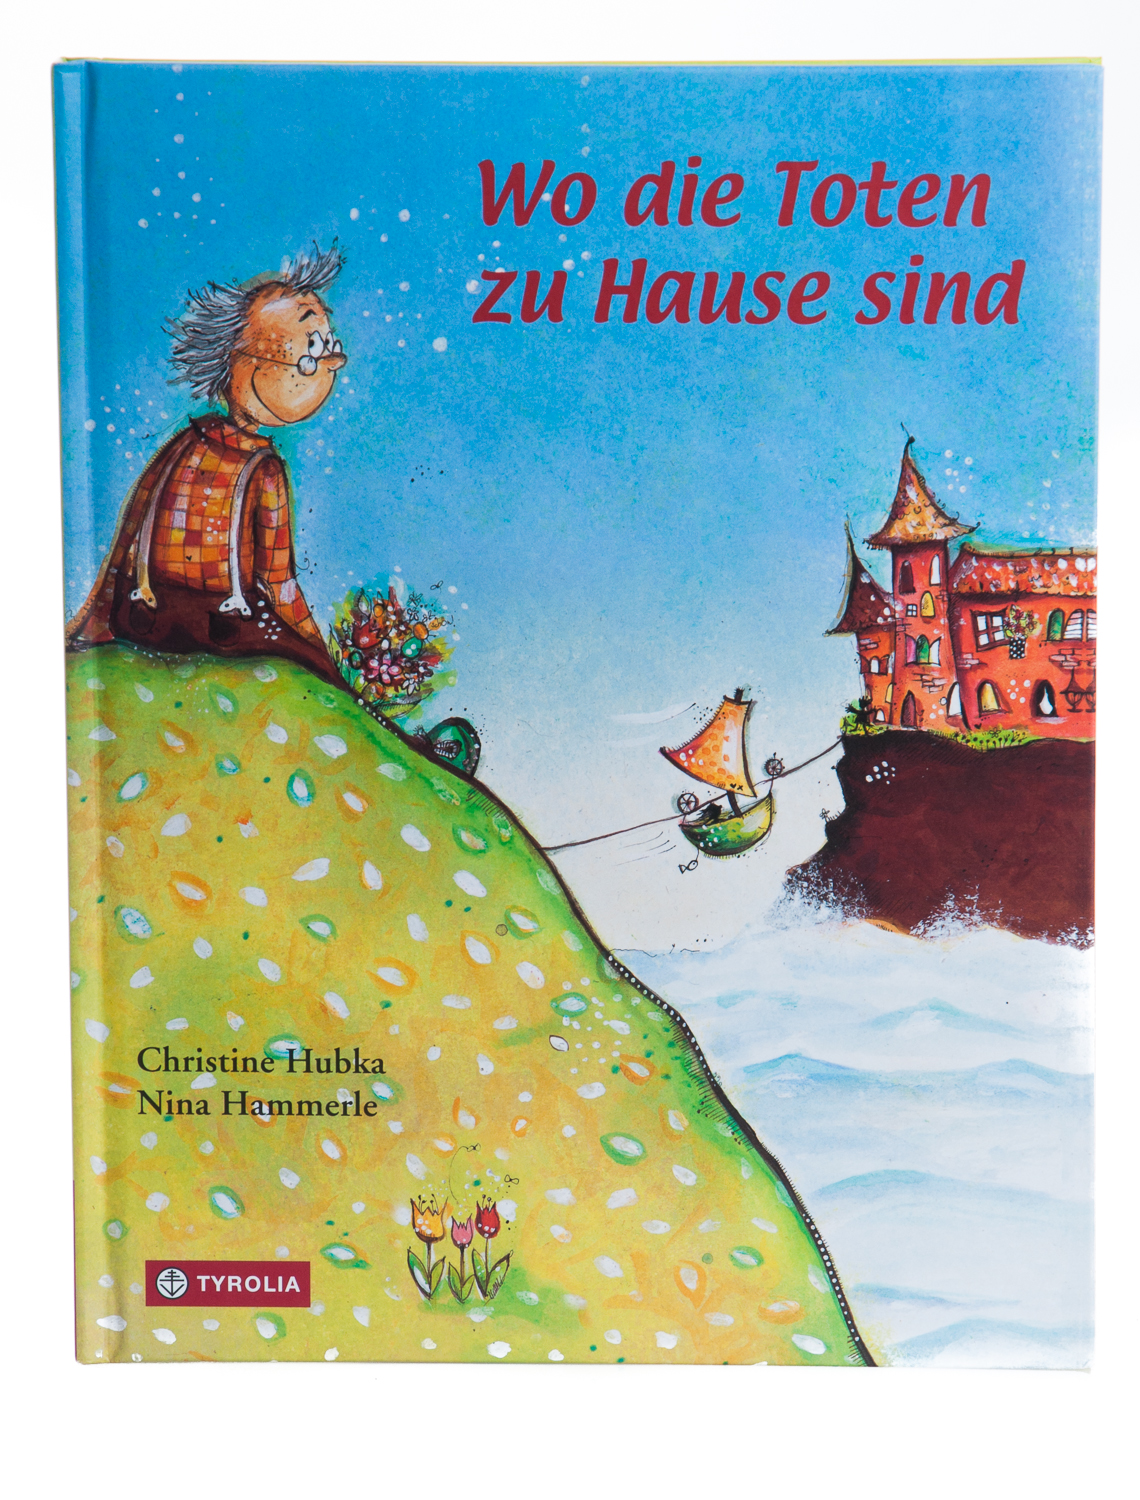 Kinderbuch - Wo die Toten zu Hause sind